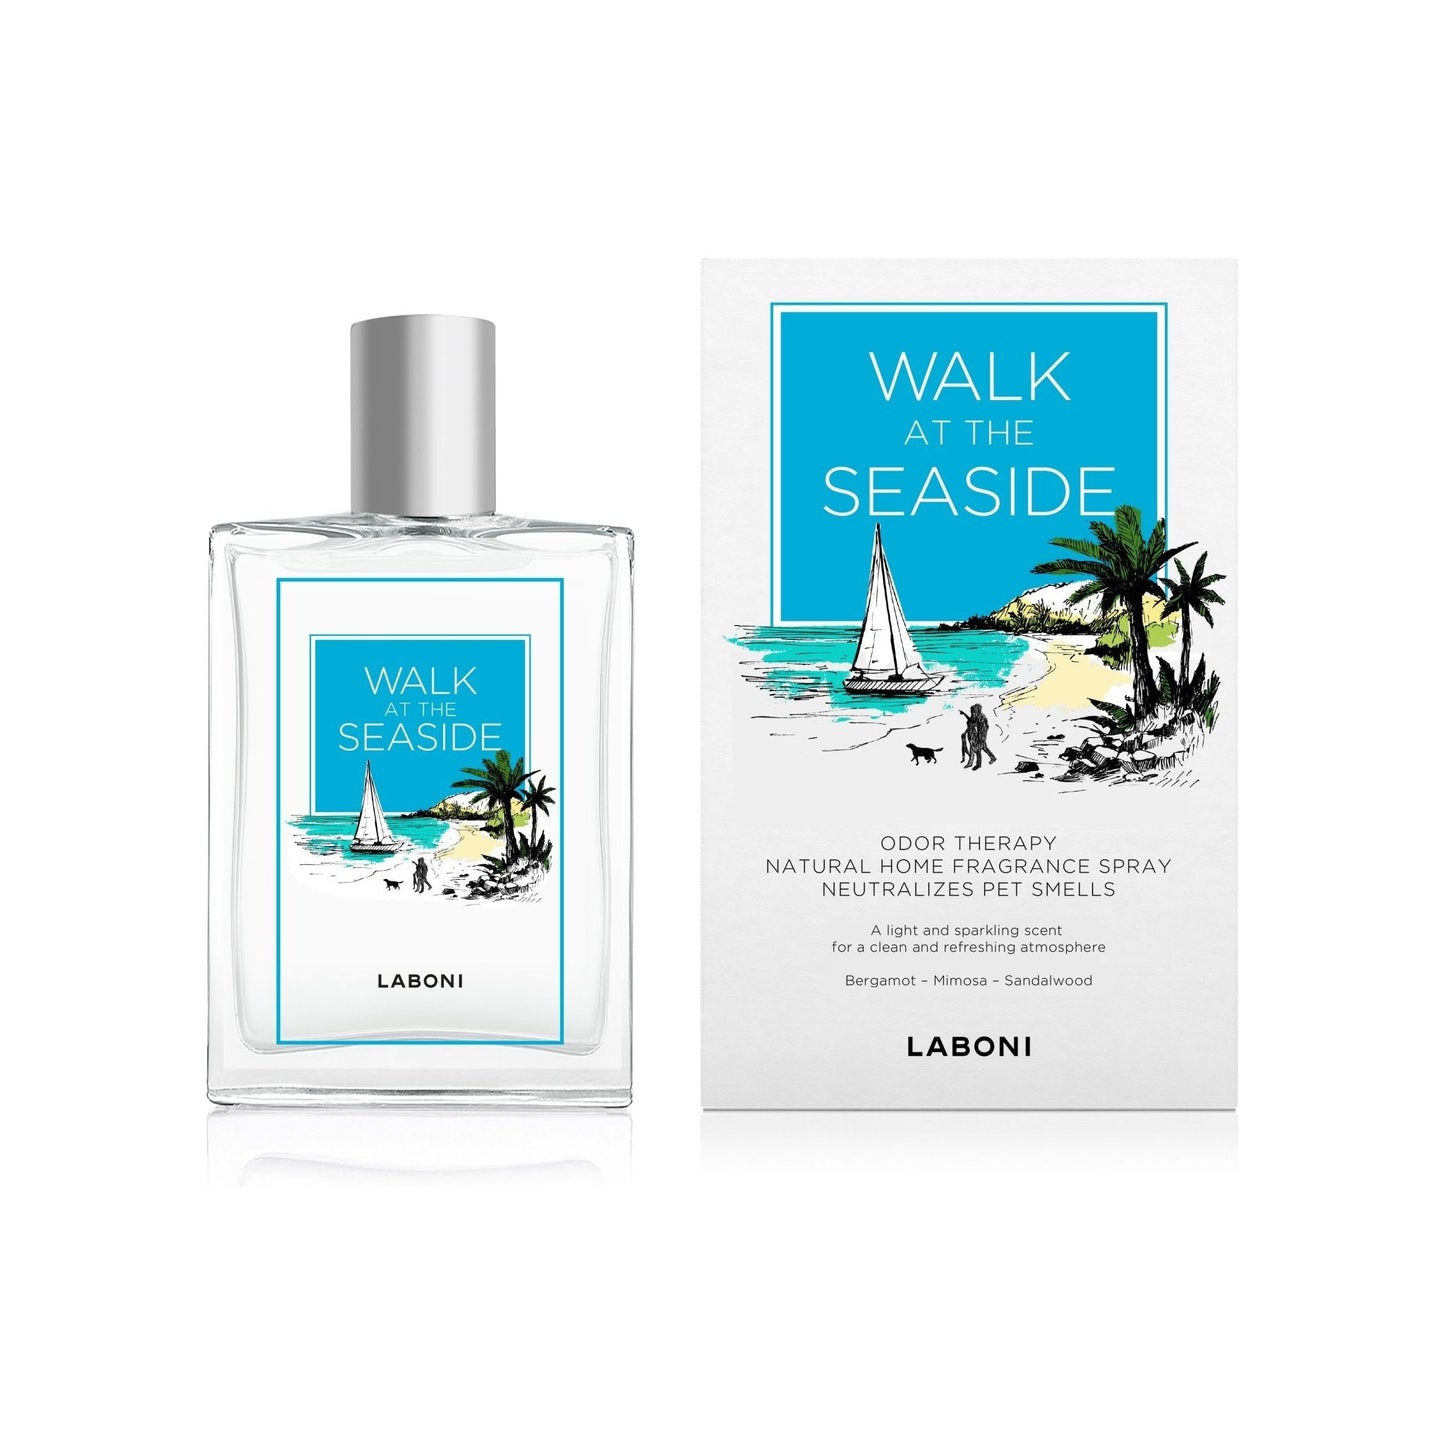 Walk at the Seaside - praktisches Duft-Spray zur Beseitigung von Gerüchen - Askmy4Cats